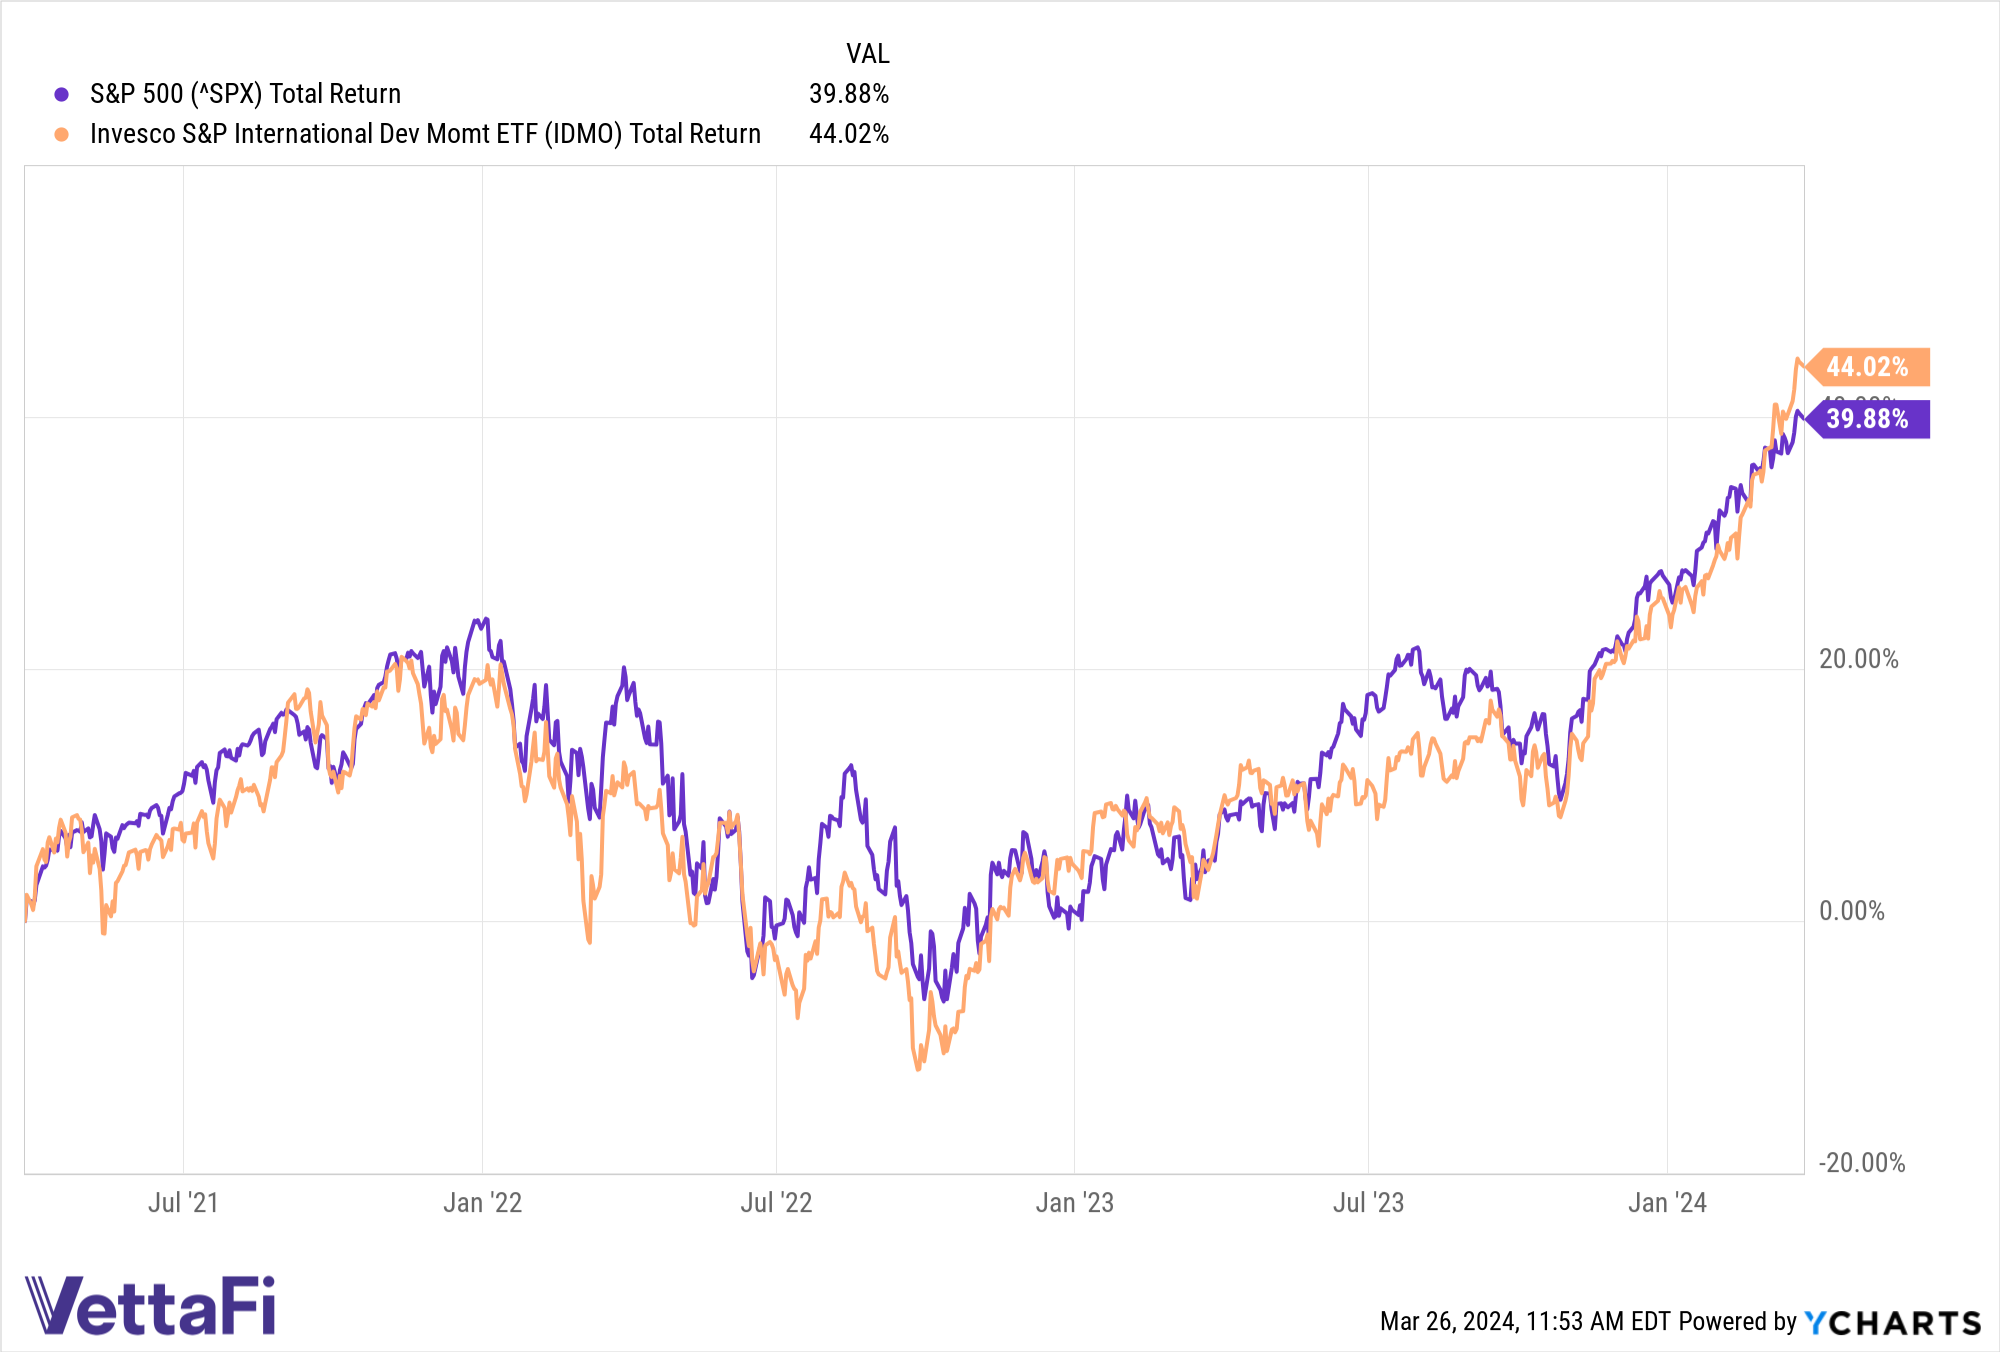 S&P 500 vs. IDMO